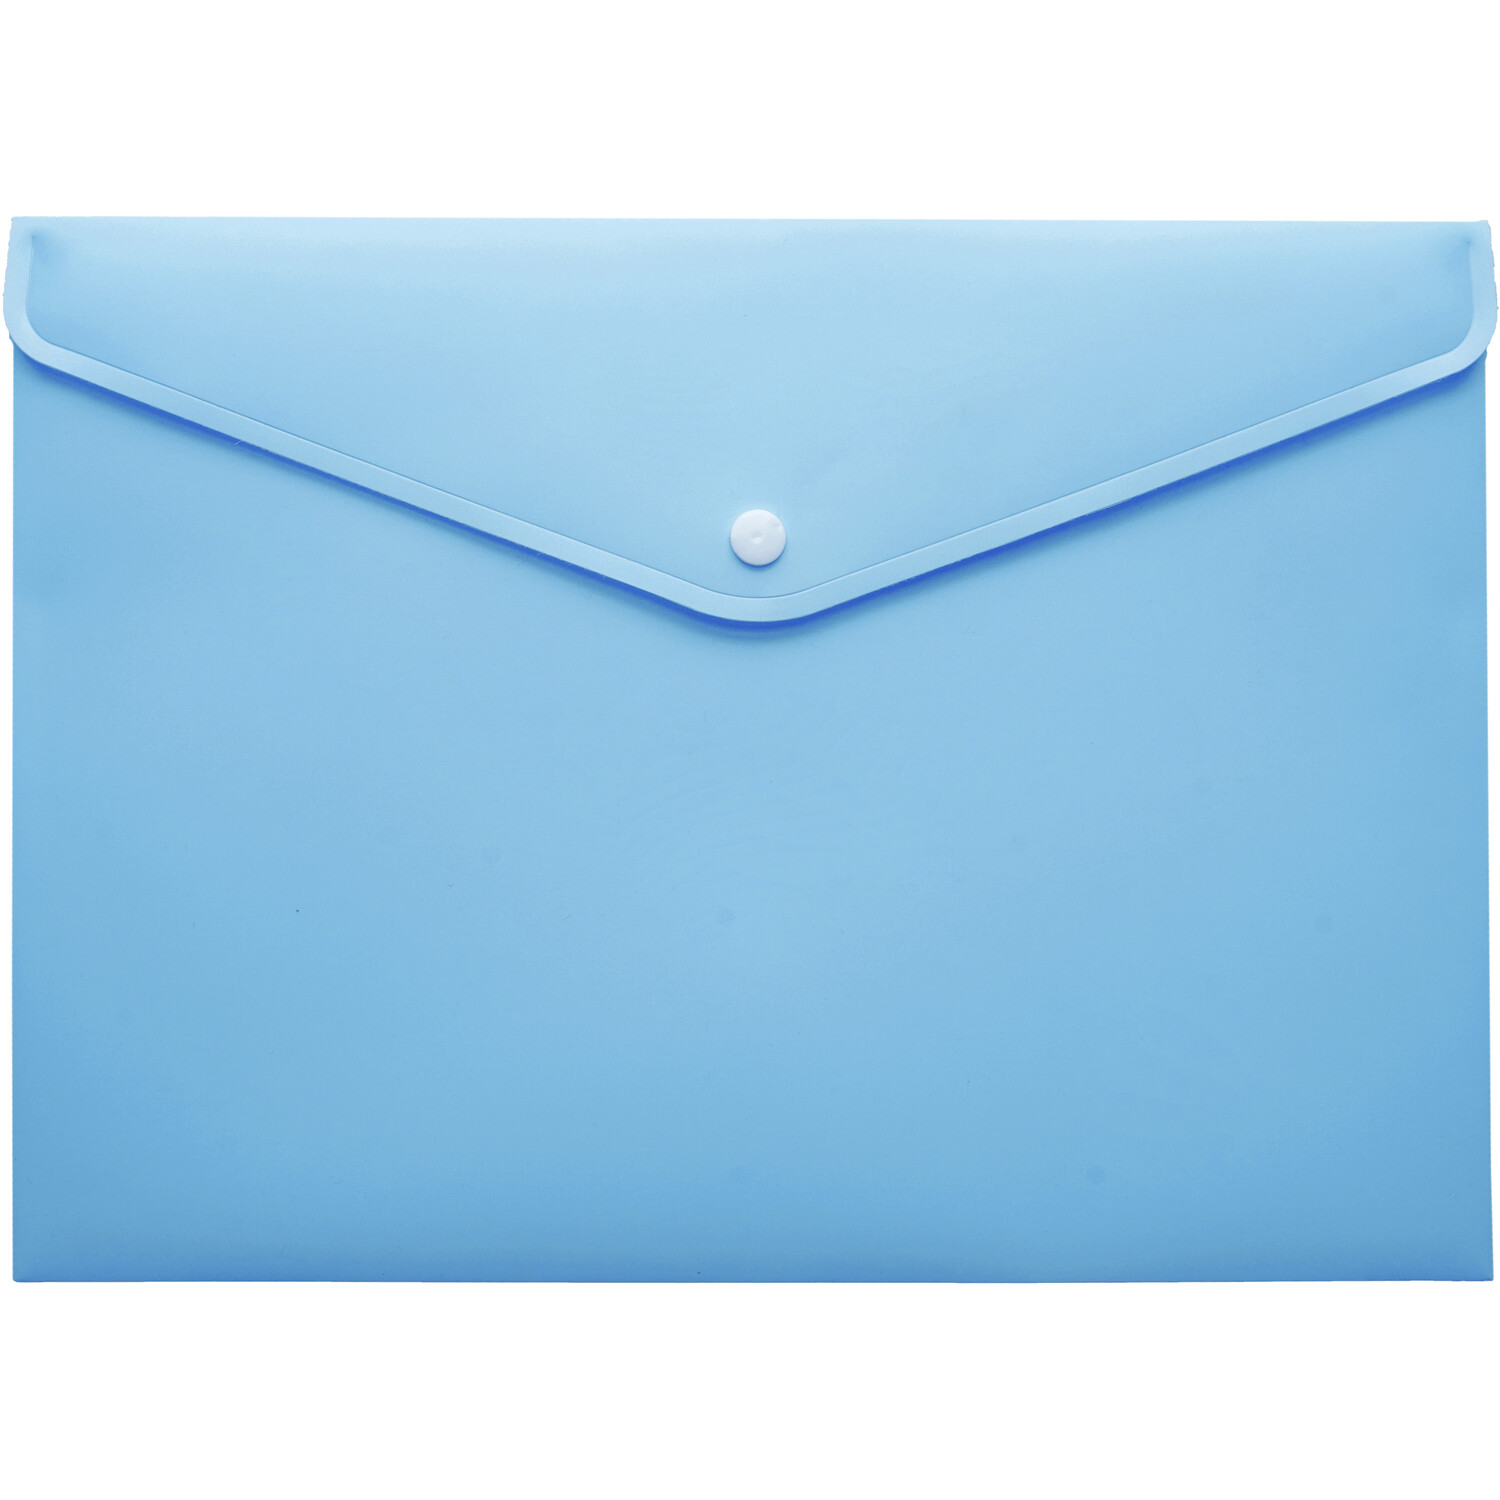 Envelop Folder Pastel Image 3